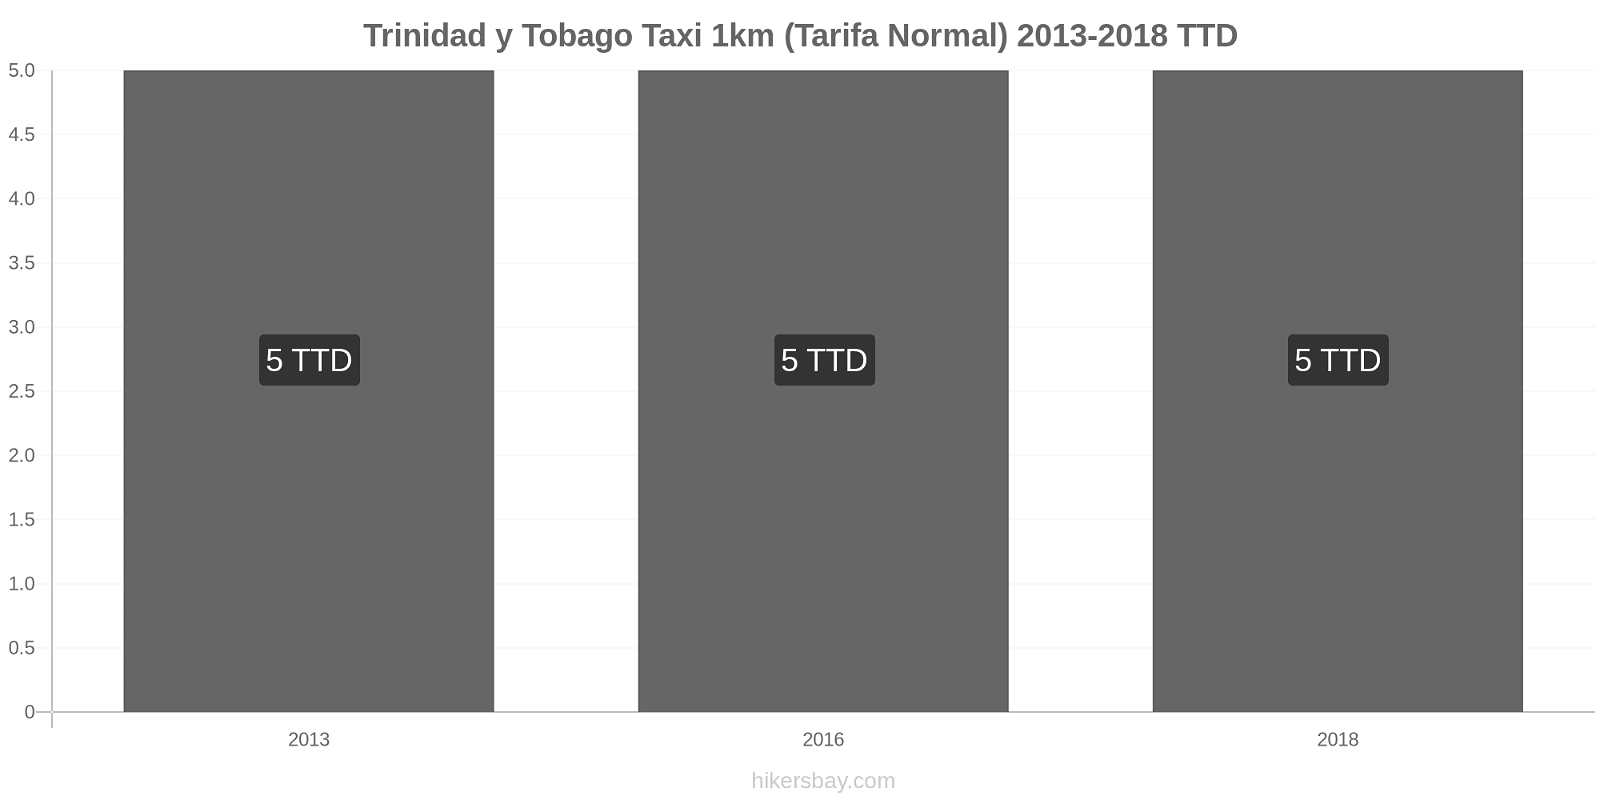 Trinidad y Tobago cambios de precios Taxi 1km (tarifa normal) hikersbay.com